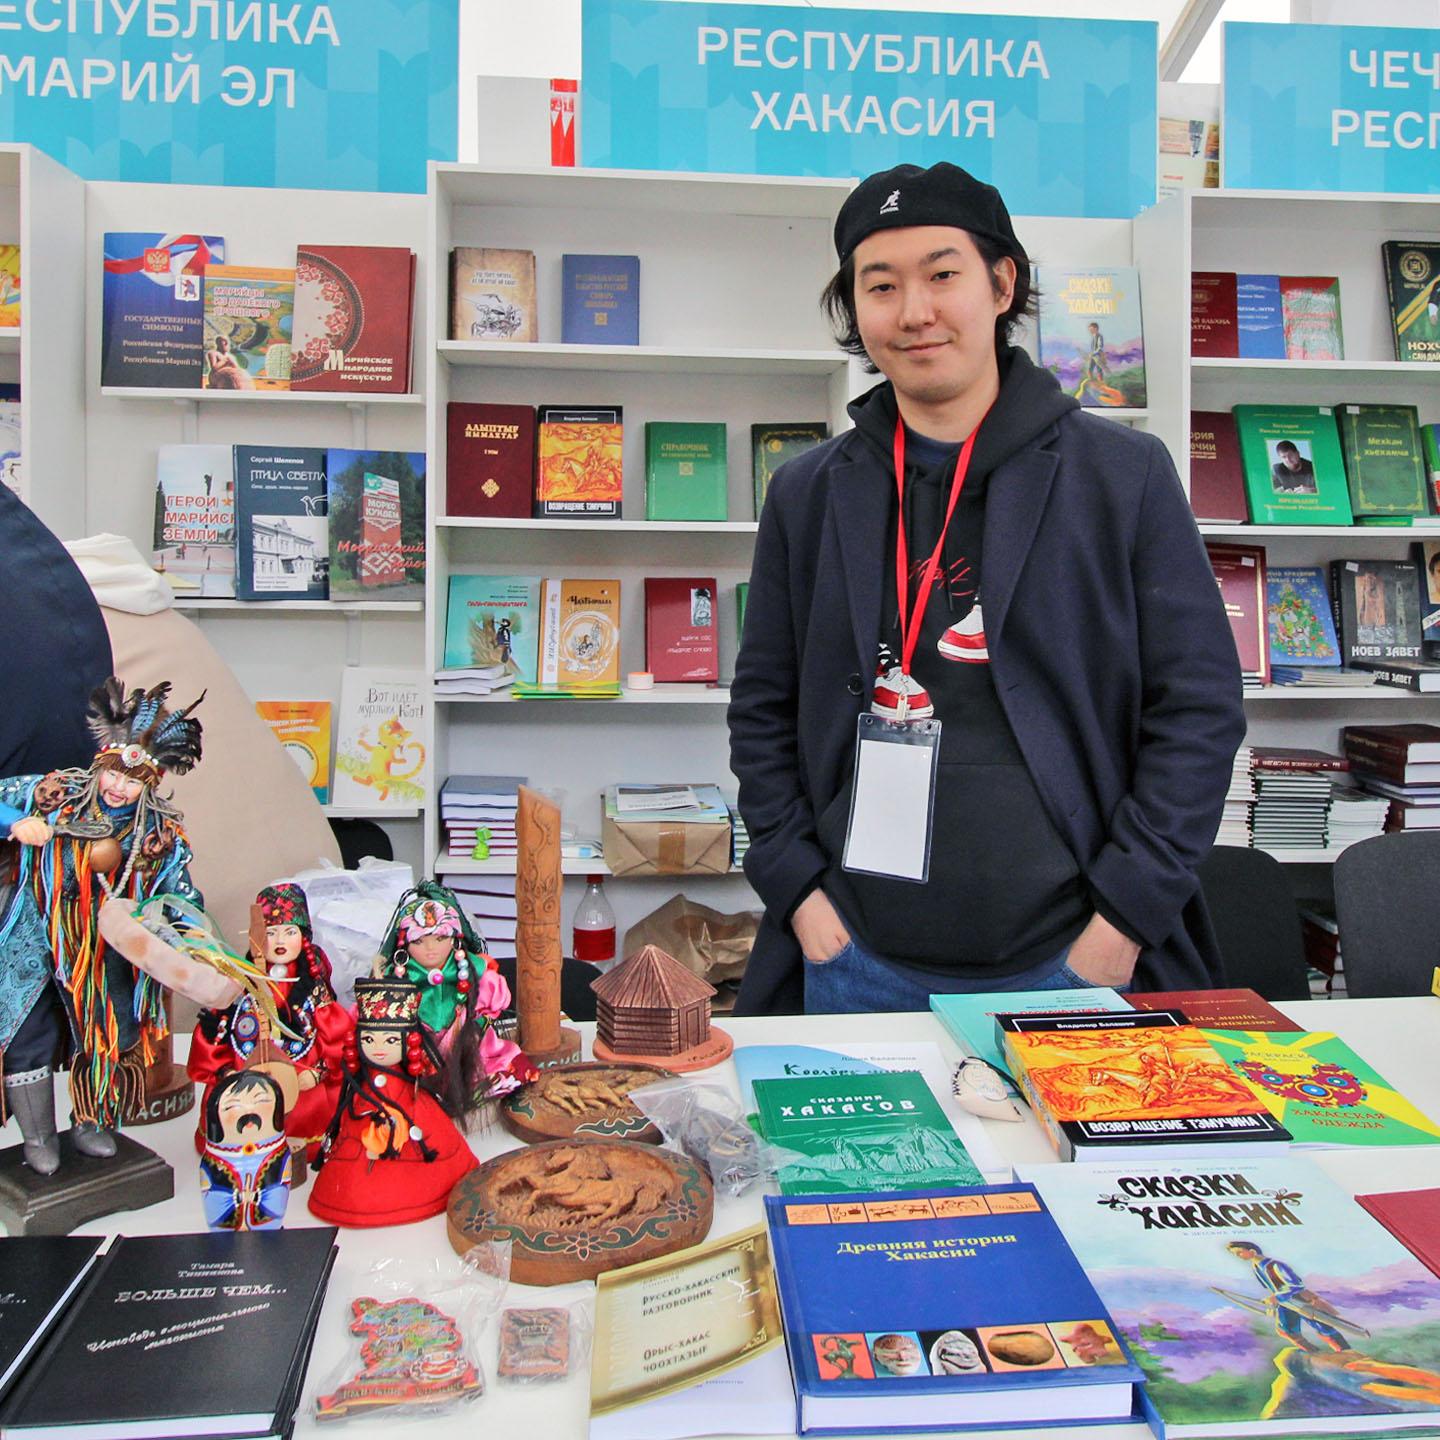 IX Книжный фестиваль Красная площадь